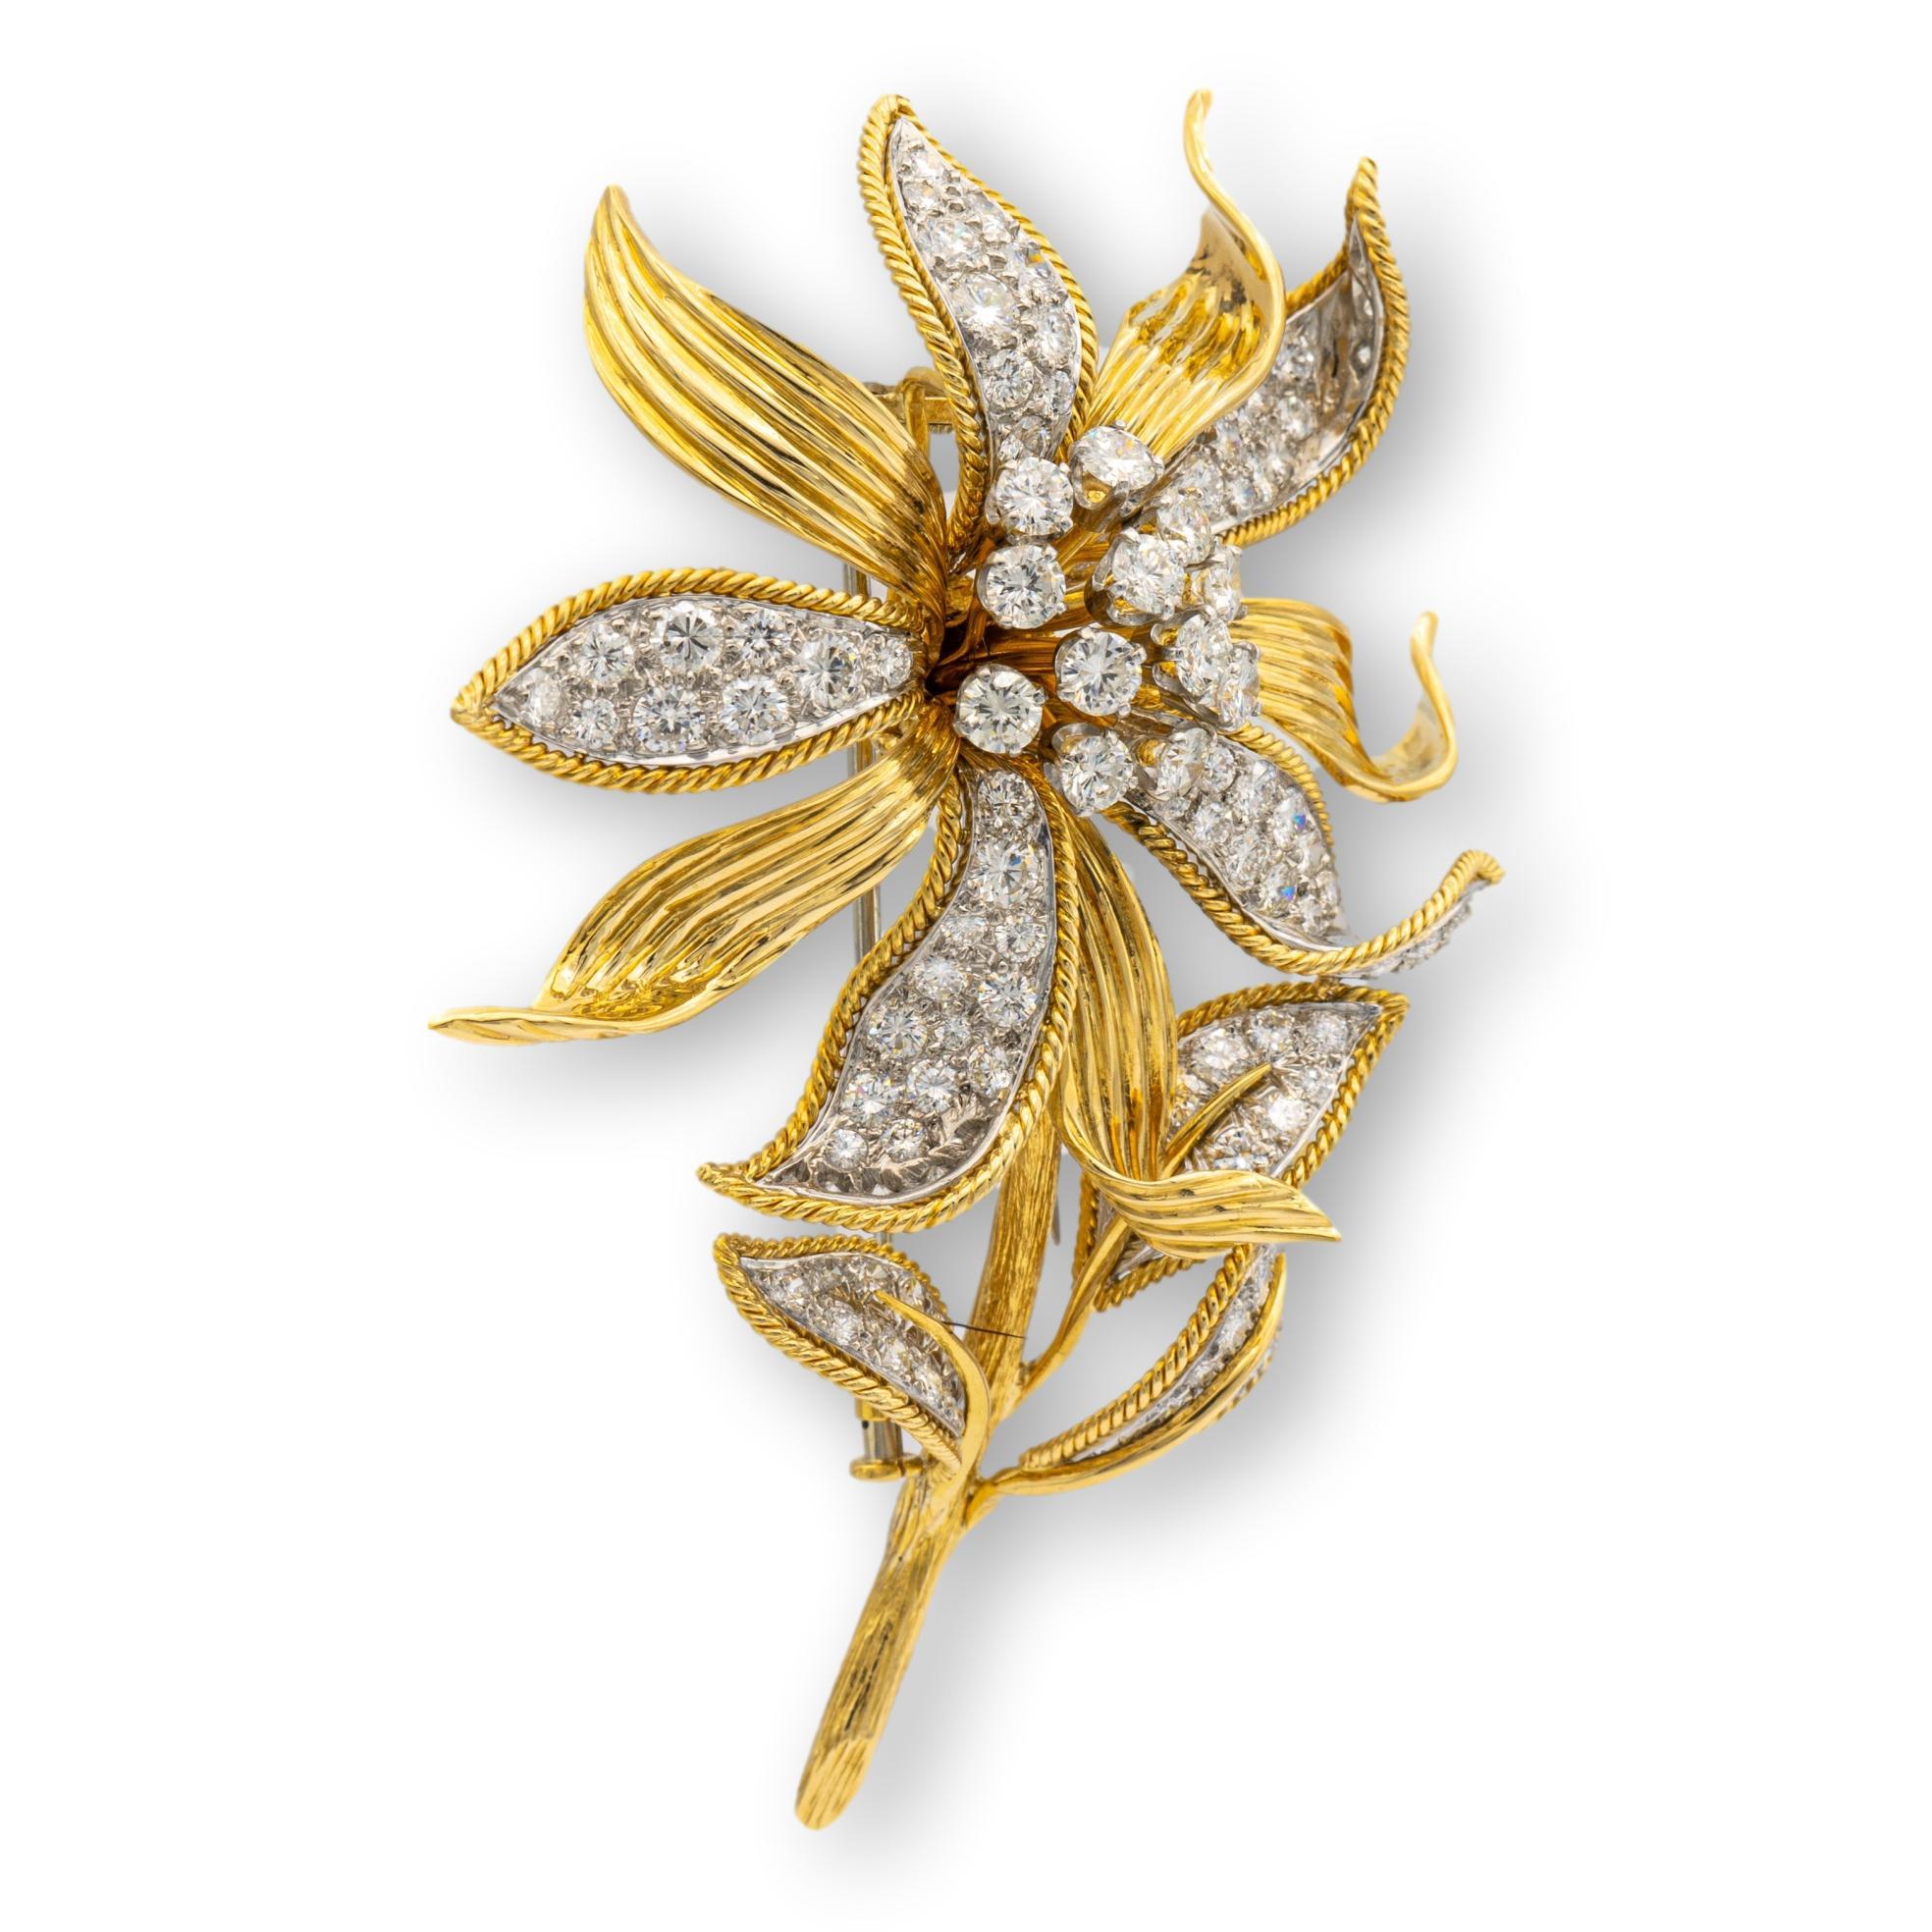 Broche David Webb finement ouvragée en or jaune 18 carats avec un motif de fleur présentant des diamants ronds de taille brillant sur des sections en platine. Le centre de la broche est orné d'une grappe en tremblant de diamants ronds de qualité,